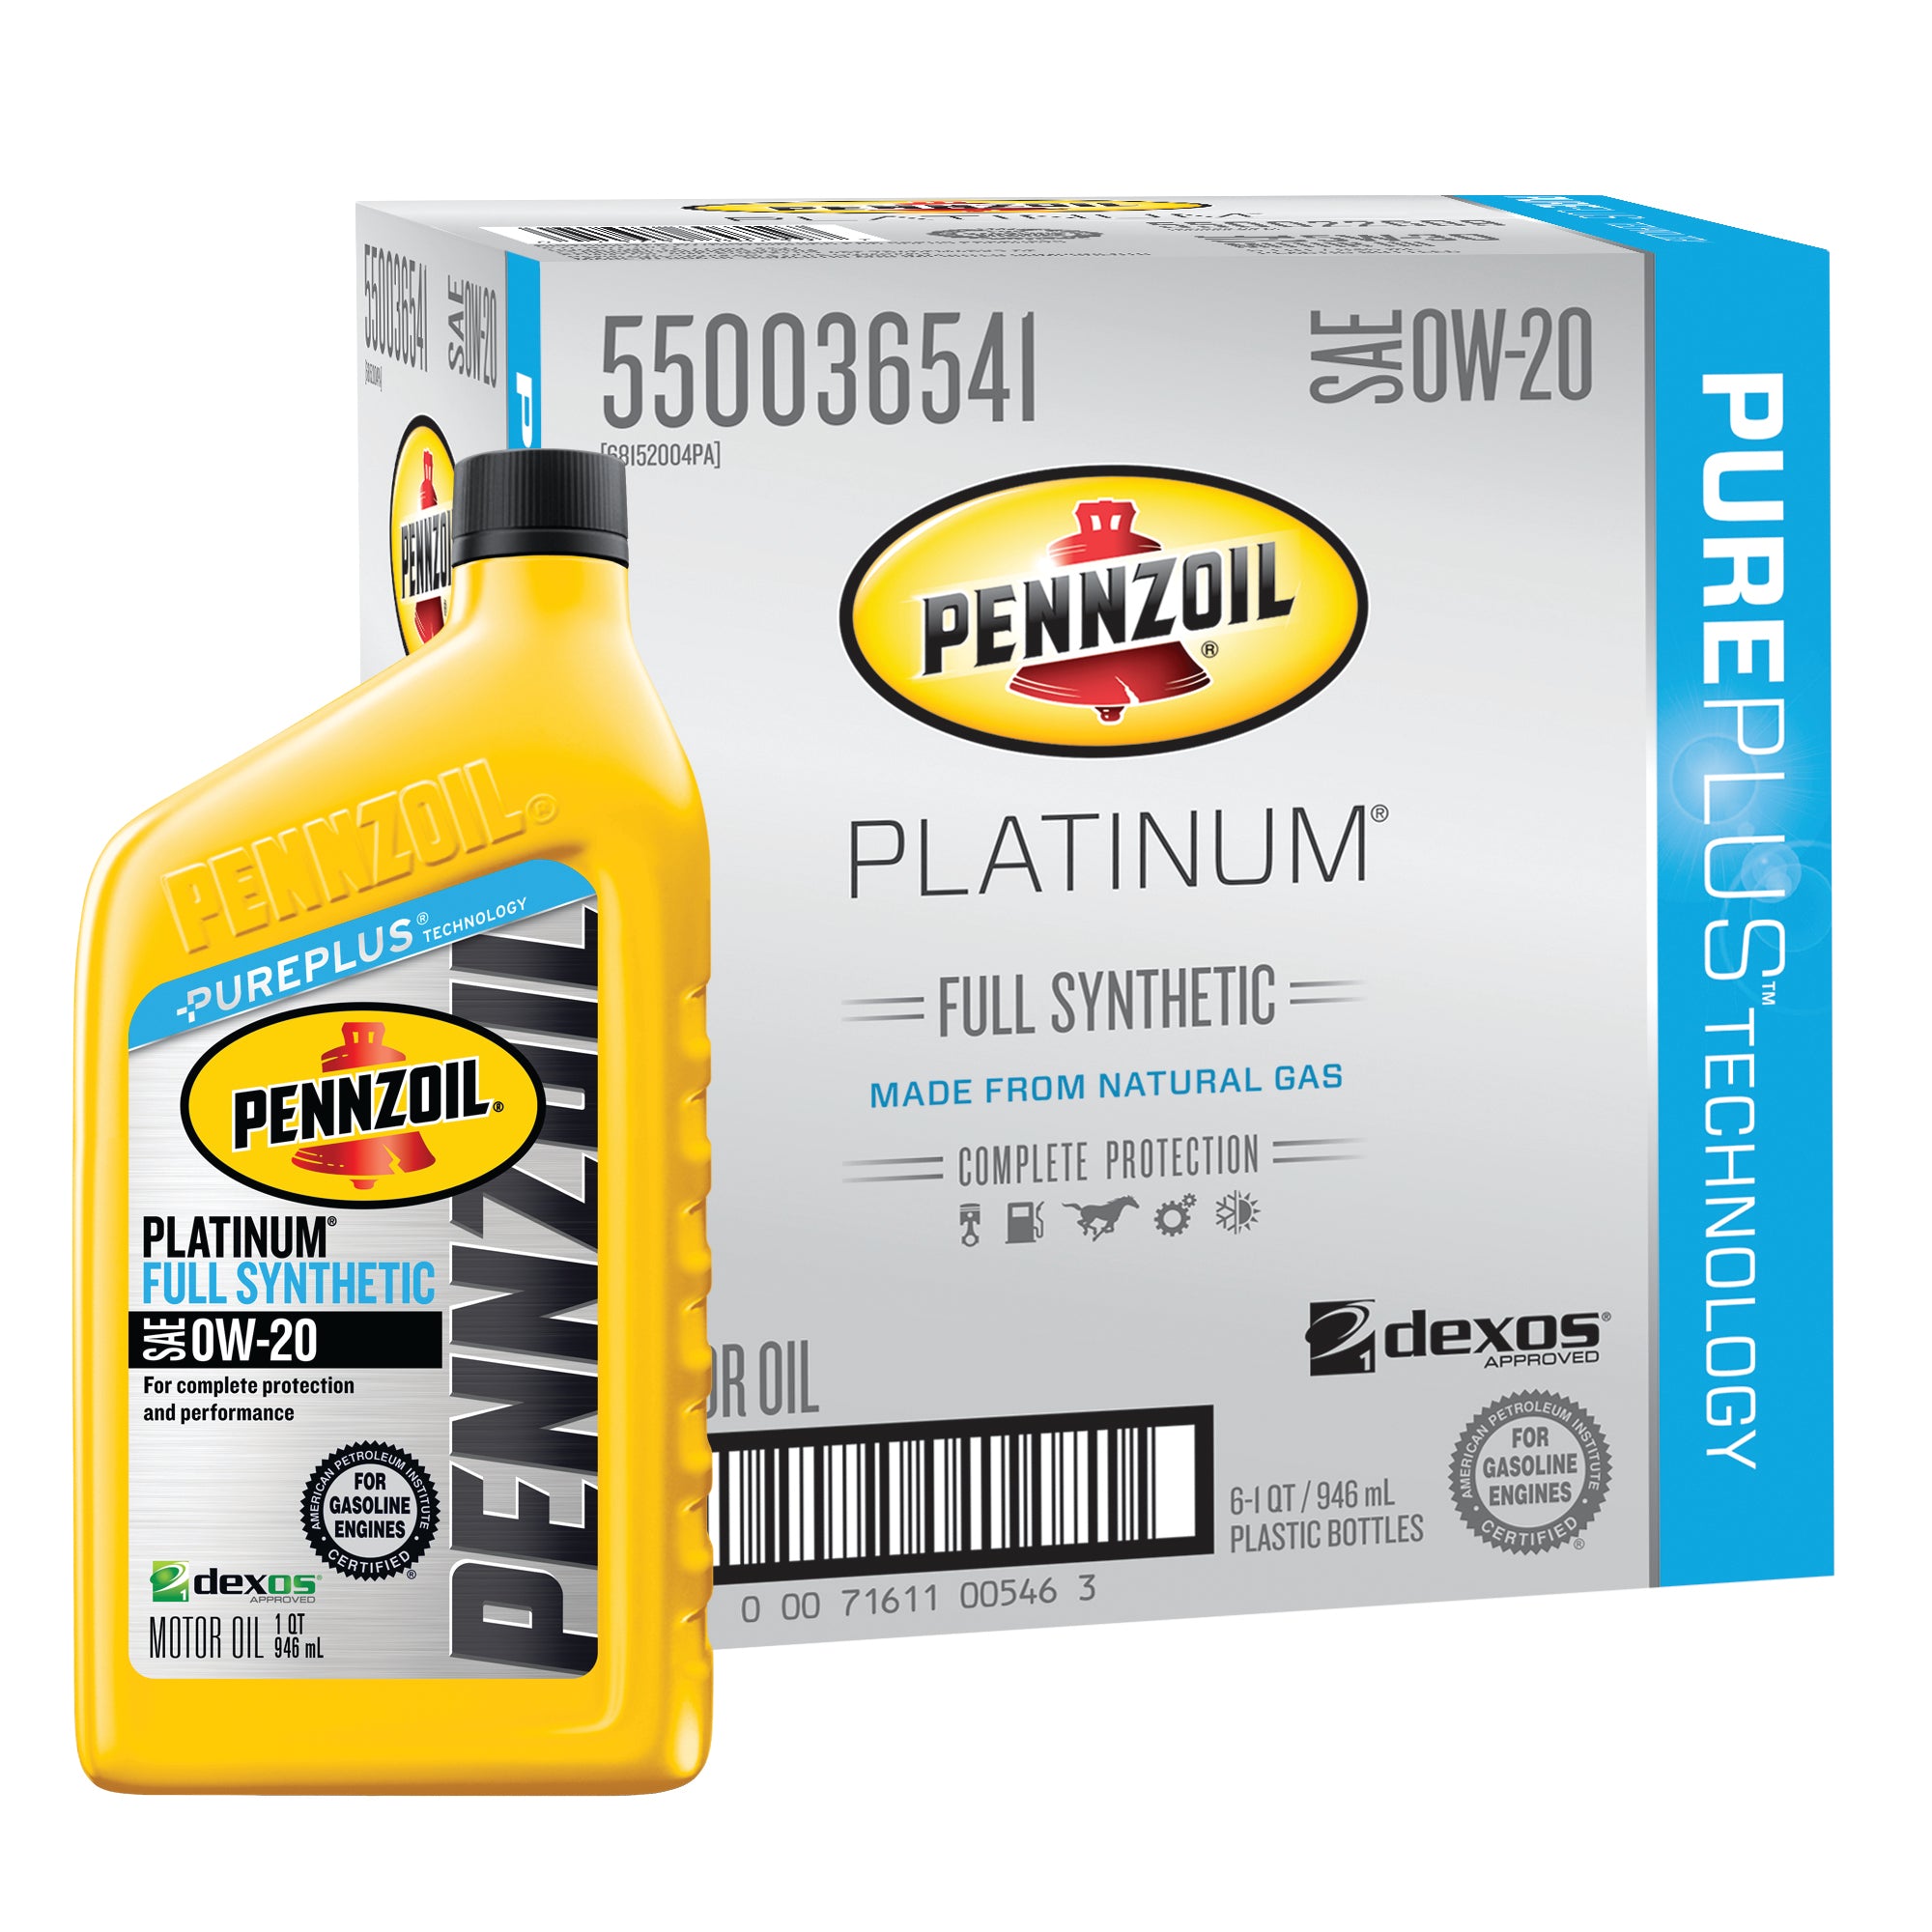 Pennzoil Platinum SAE 0W 20 Full Synthetic Motor Oil Case of 6 1 qt